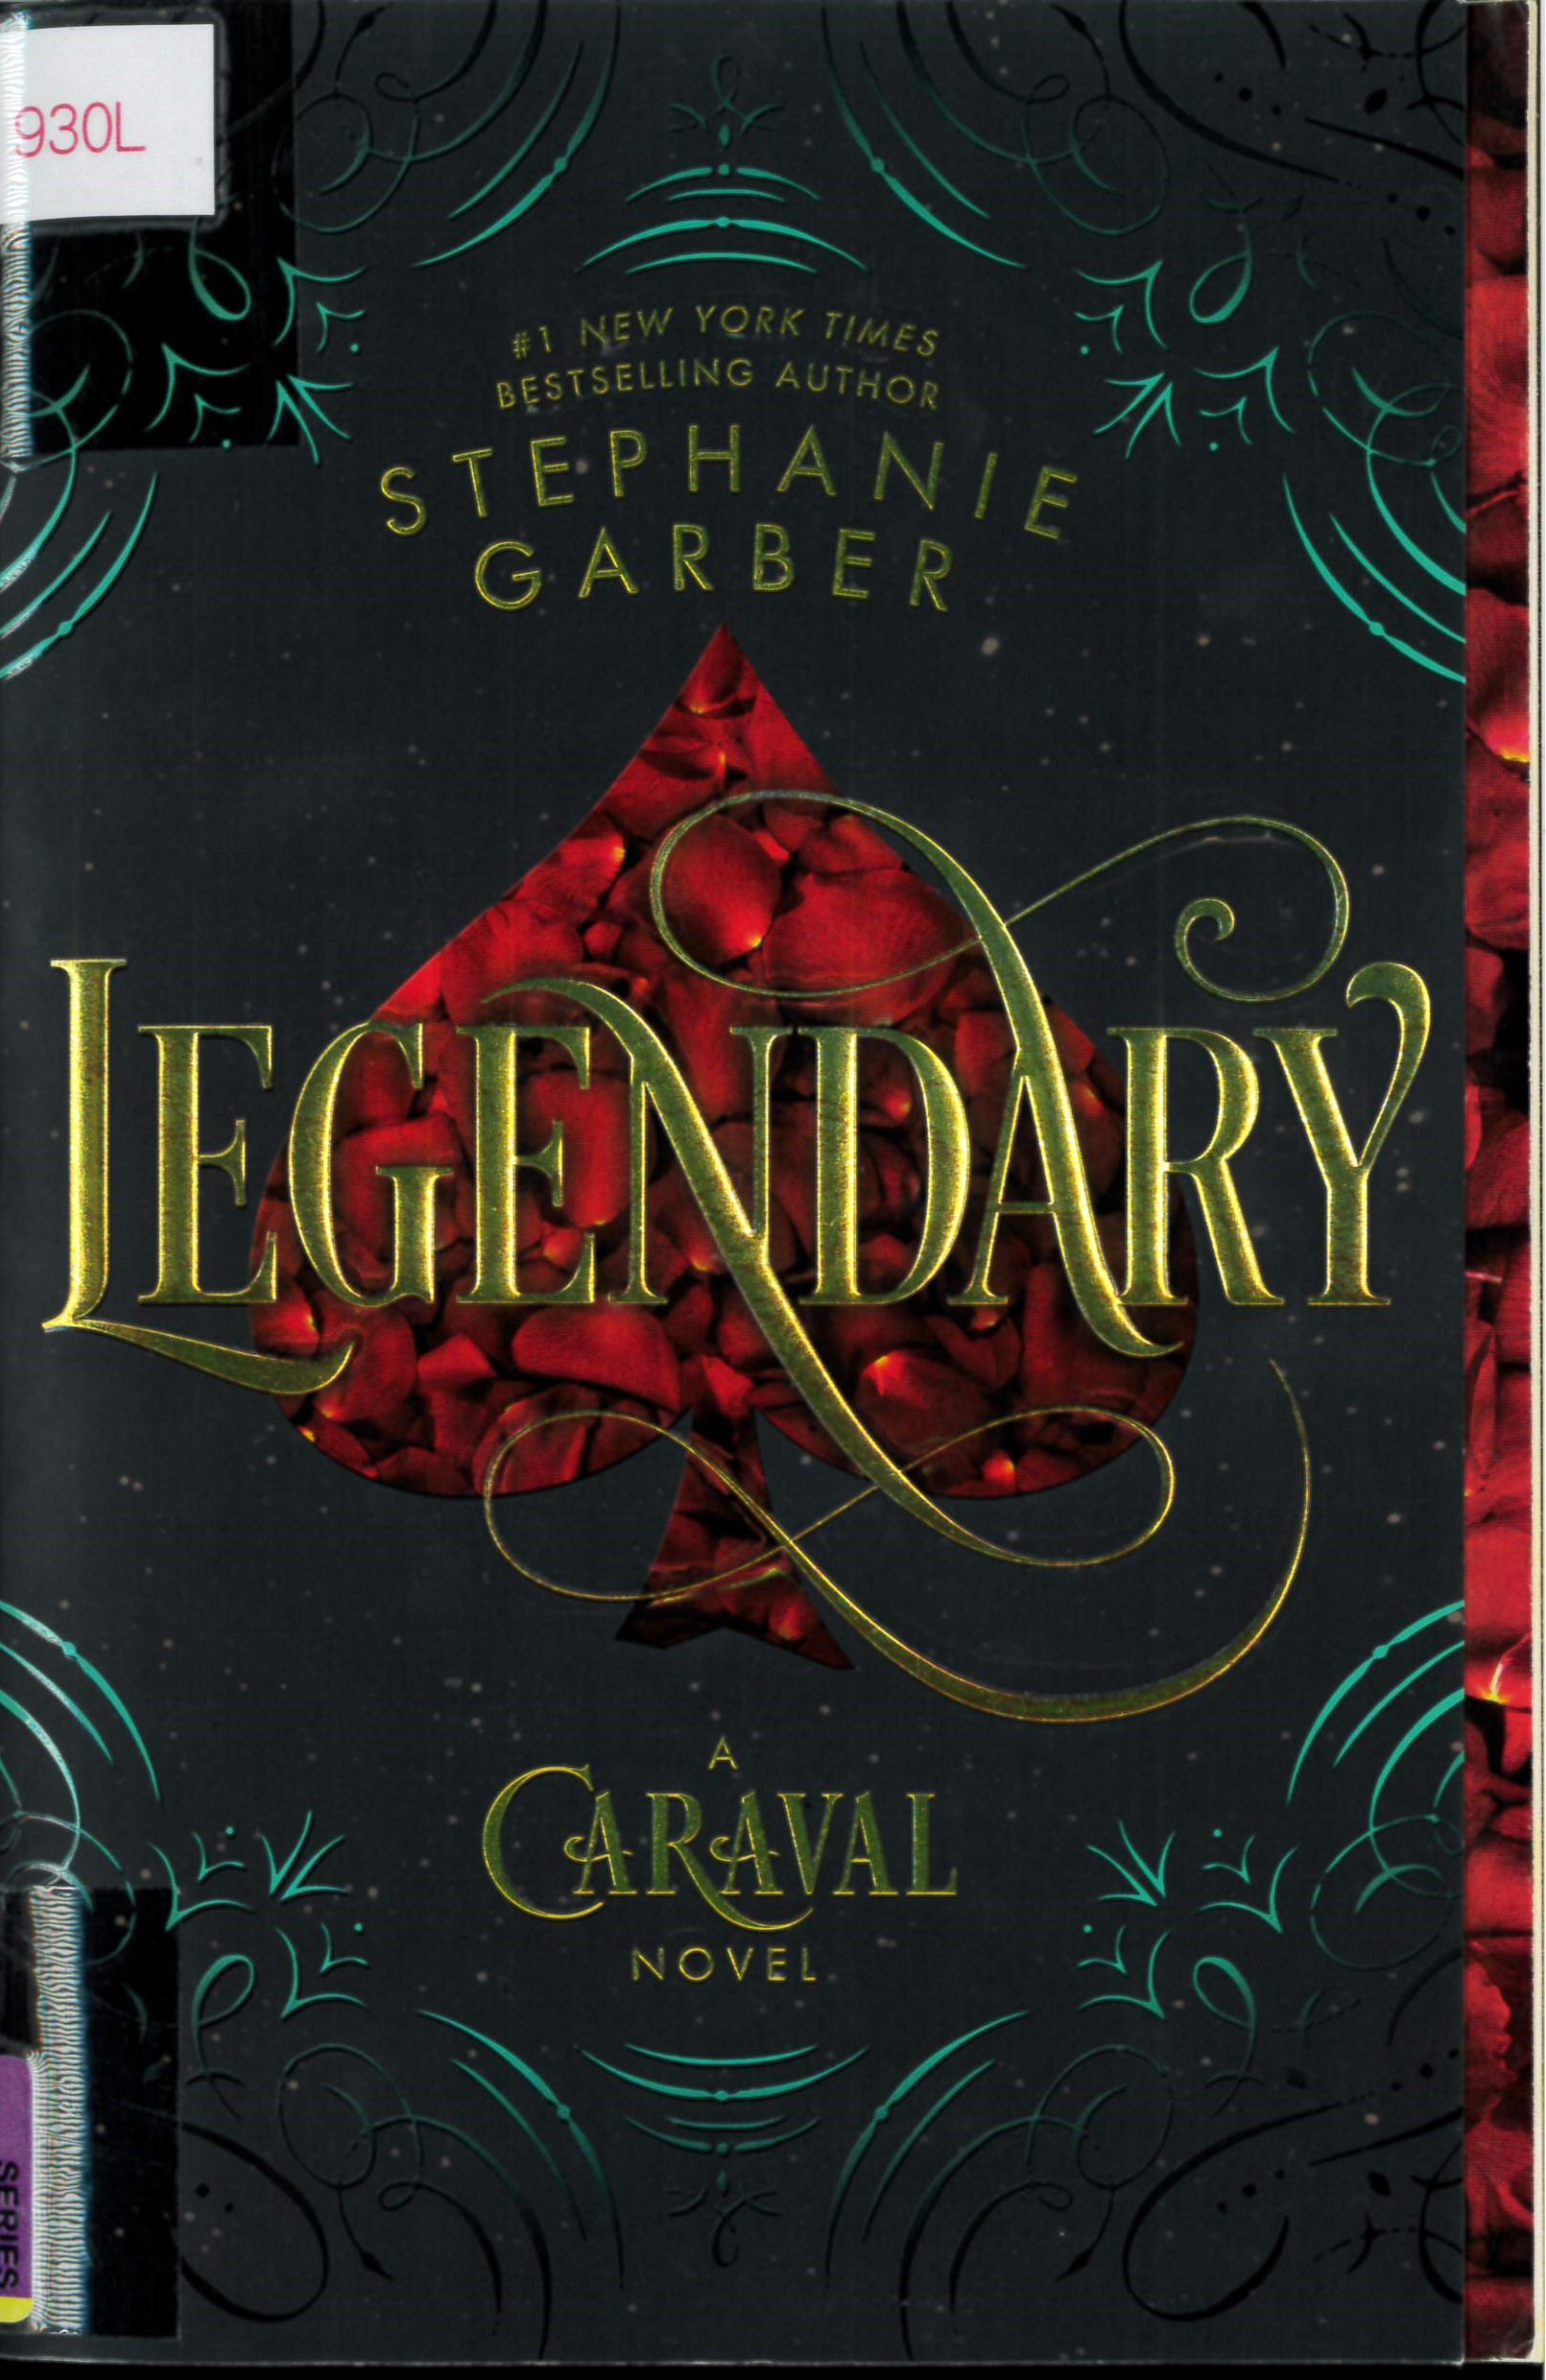 Legendary : a Caraval novel /